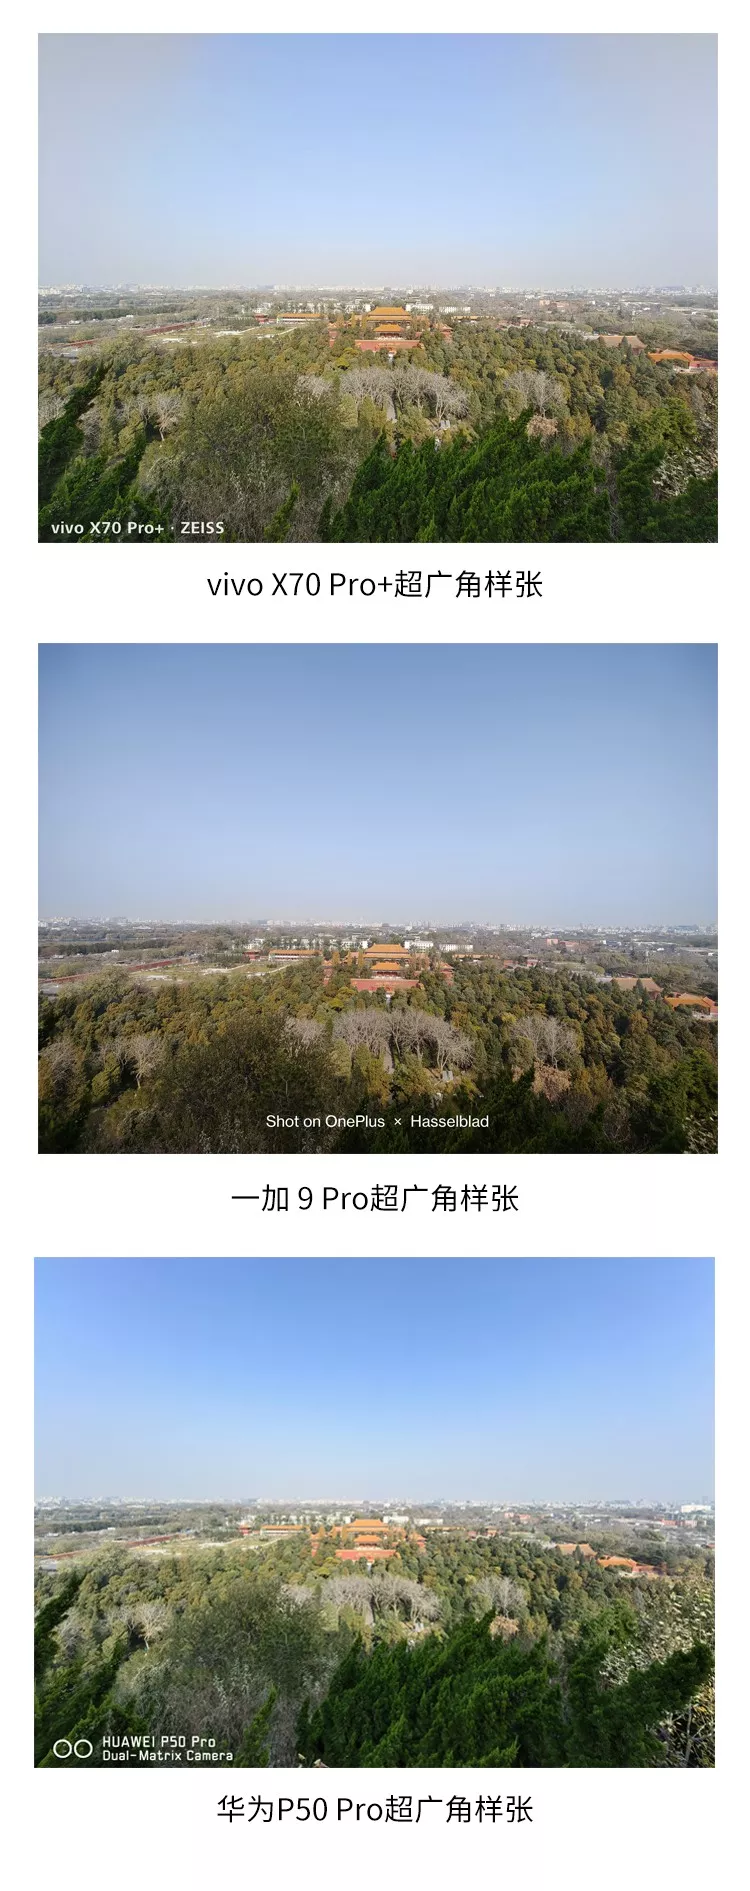 ການປຽບທຽບຮູບ X70 Pro+/OnePlus9 Pro/P50 Pro